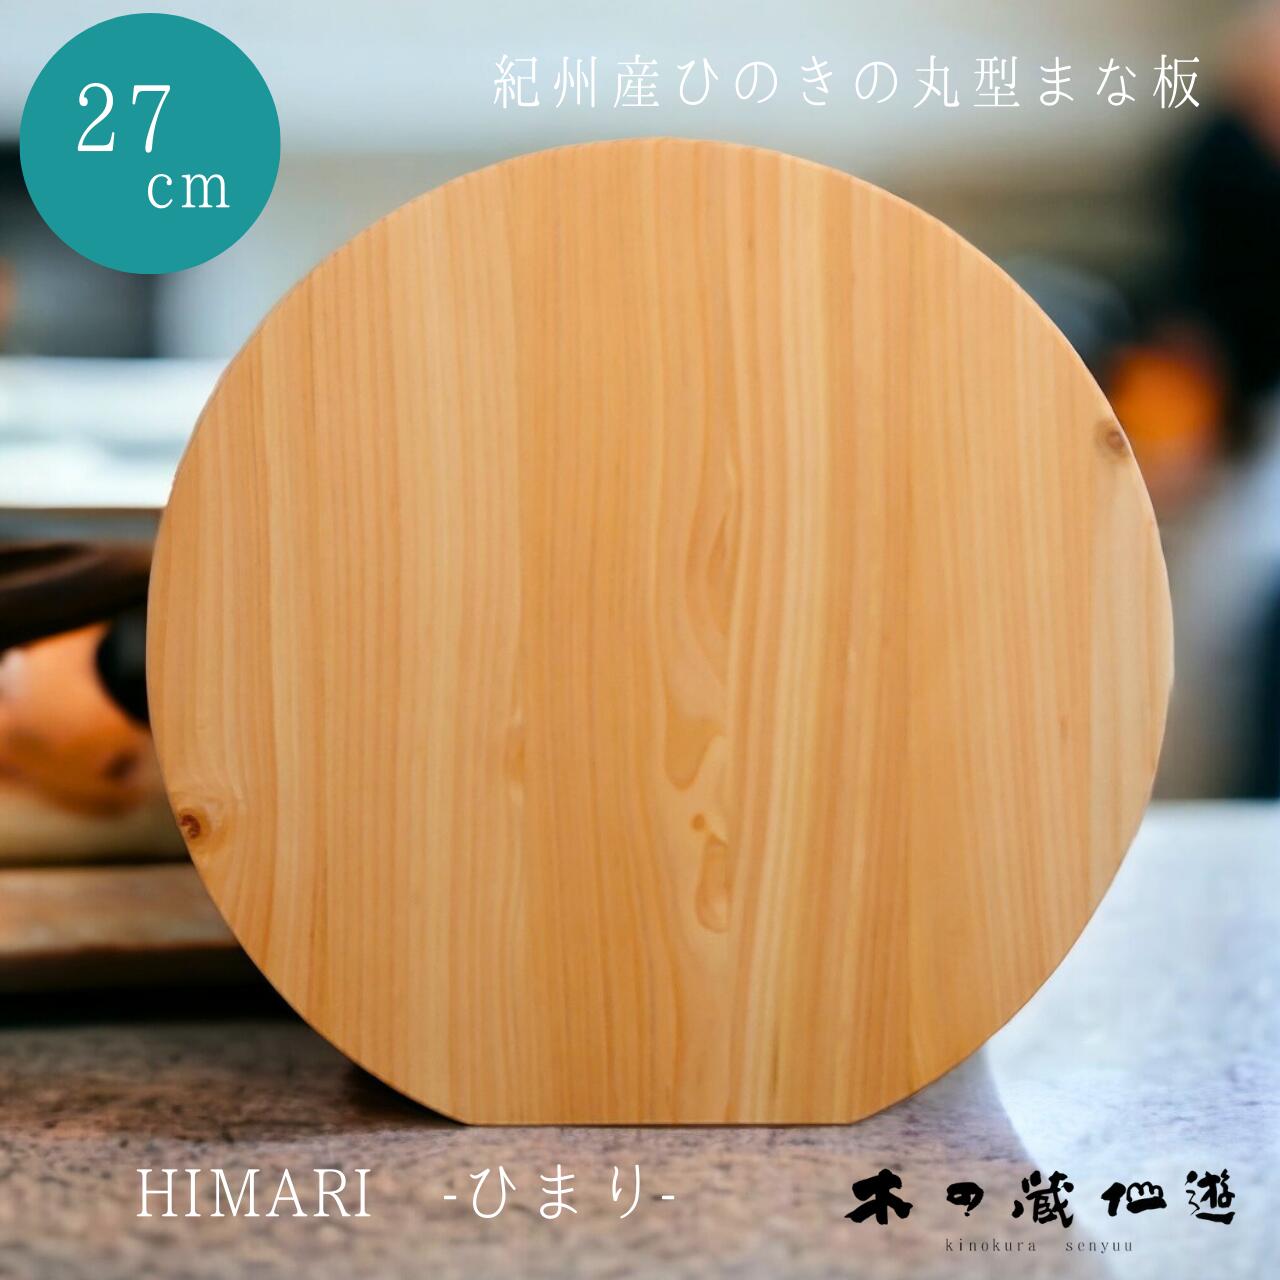 【紀州産ひのきの丸型まな板 27cm HIMARI -ひまり-】 ひのき 桧 丸型 木製 カッティングボード ウッドボード 自立型 軽い キッチン キッチンツール ナチュラル 北欧 自然素材 父の日 母の日 お祝い